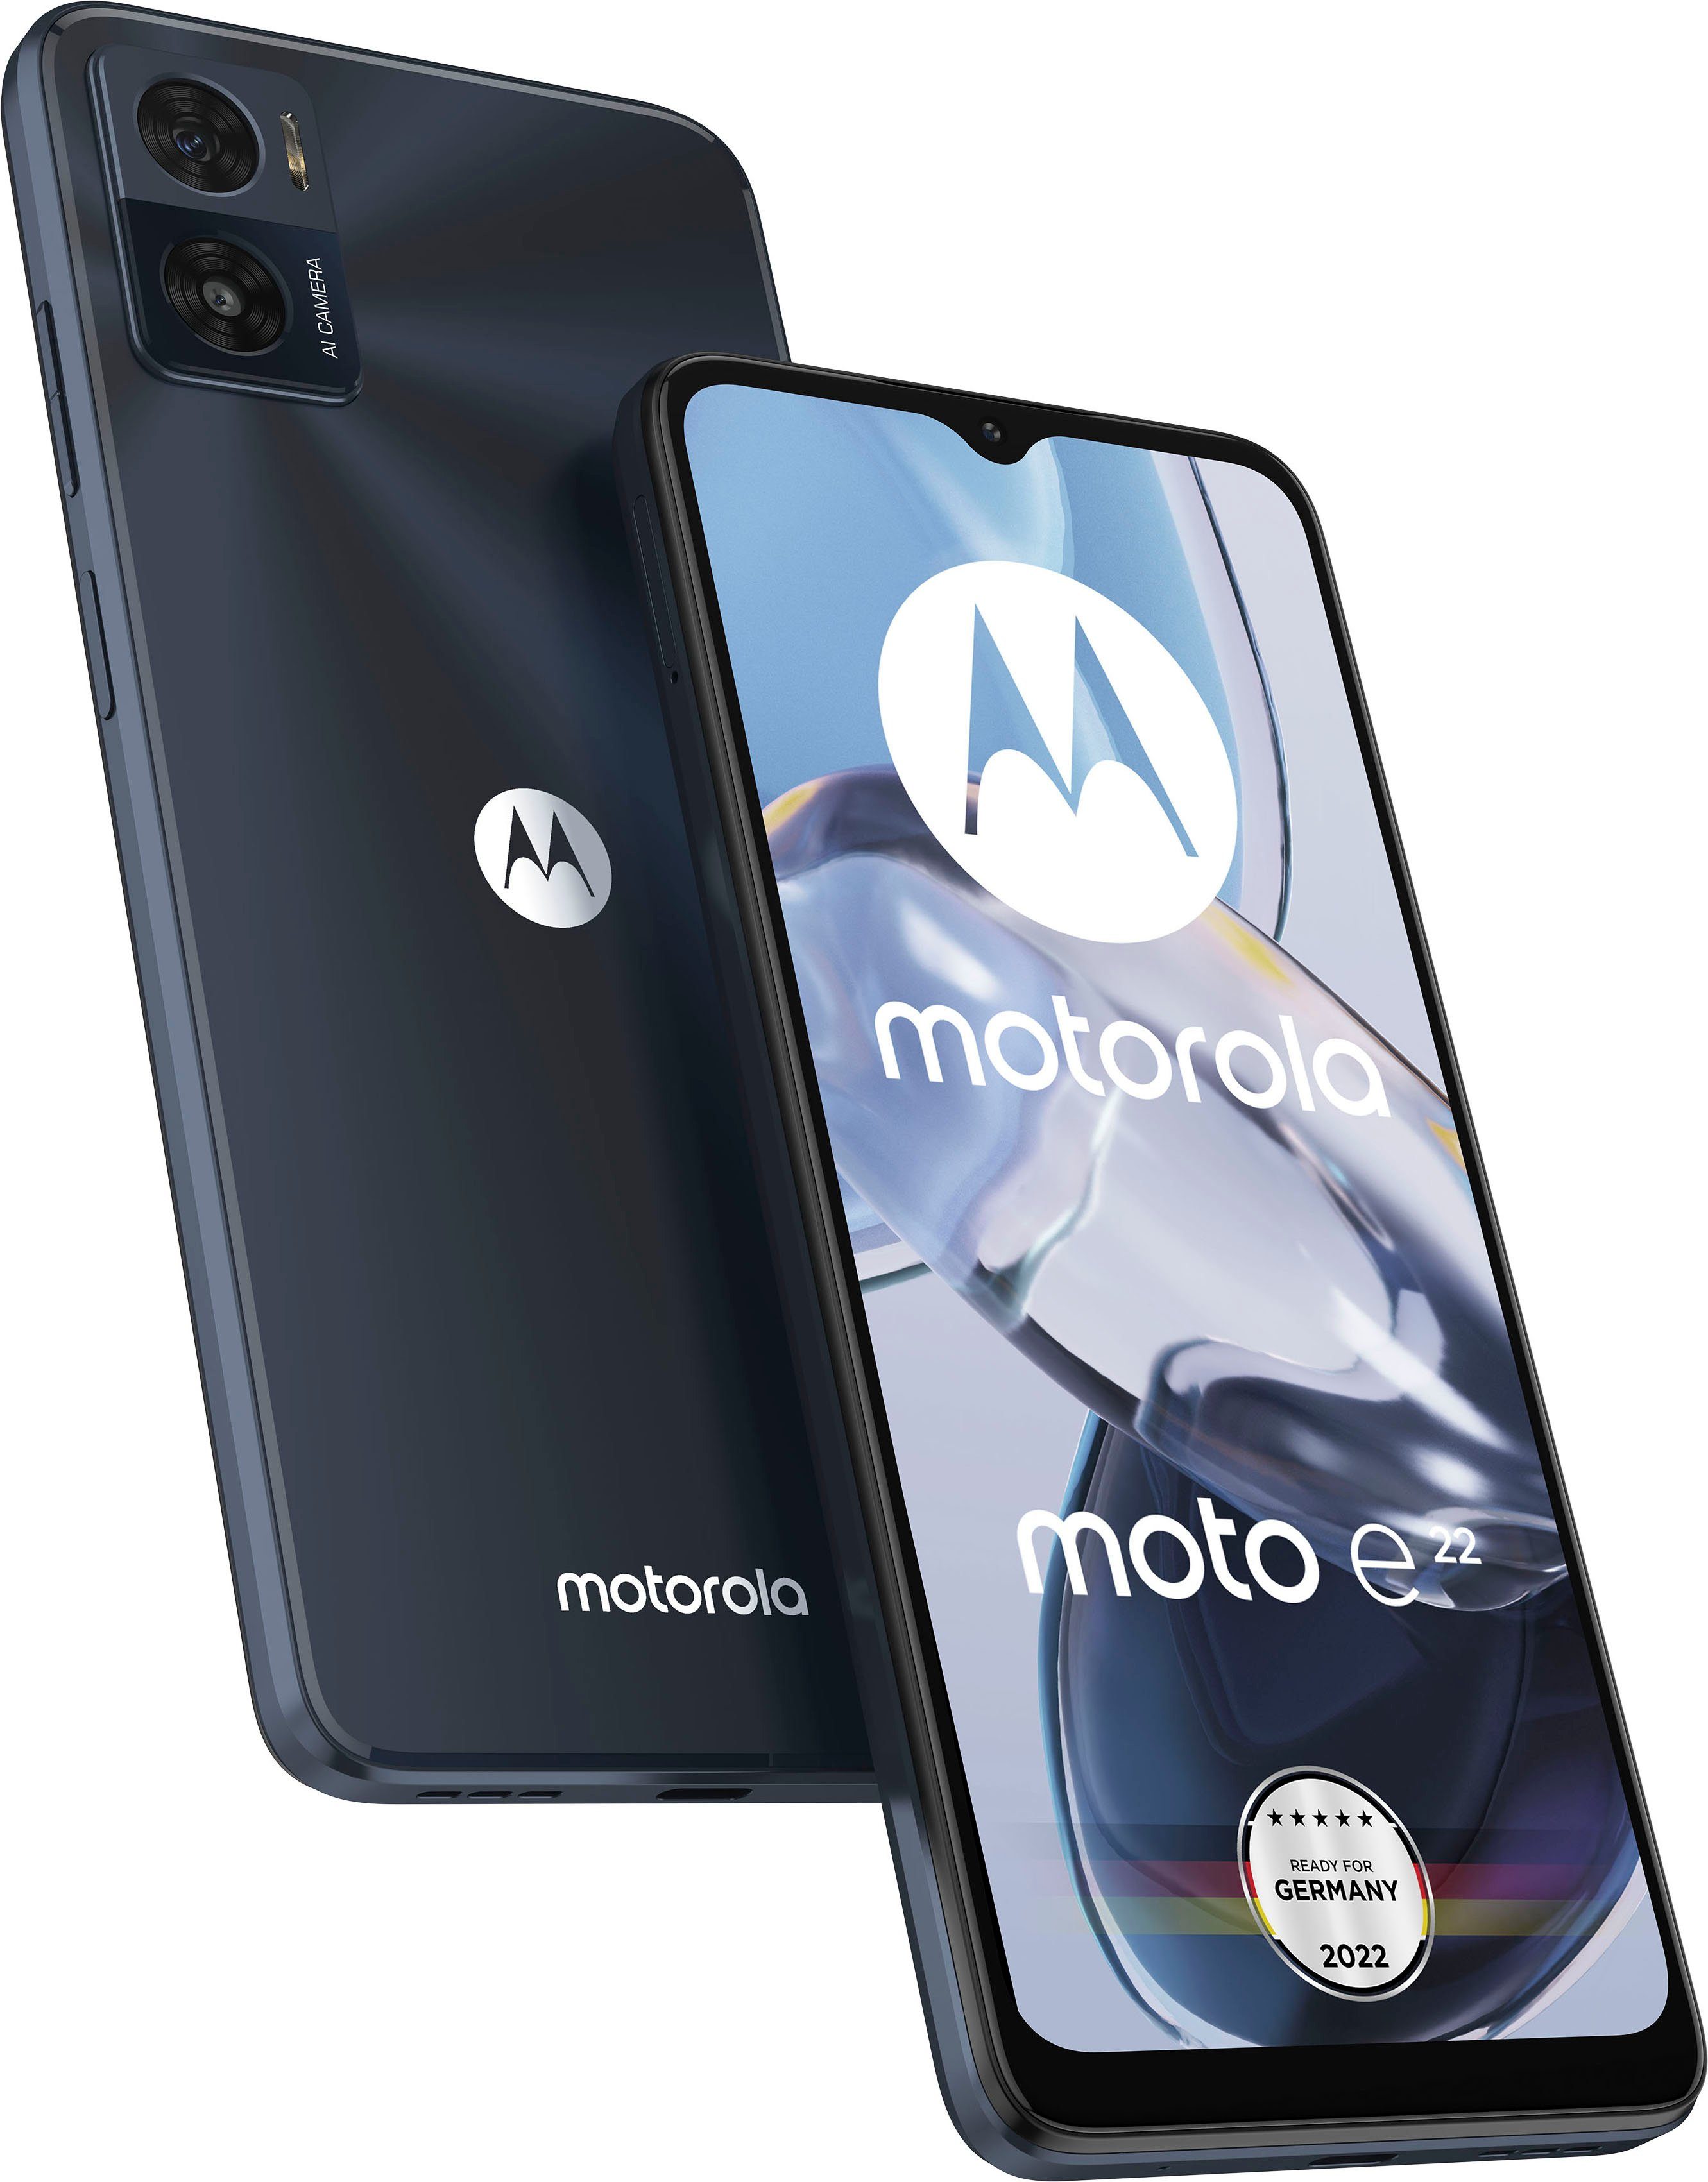 Motorola Mobiltelefone kaufen » Motorola Tastenhandys | OTTO